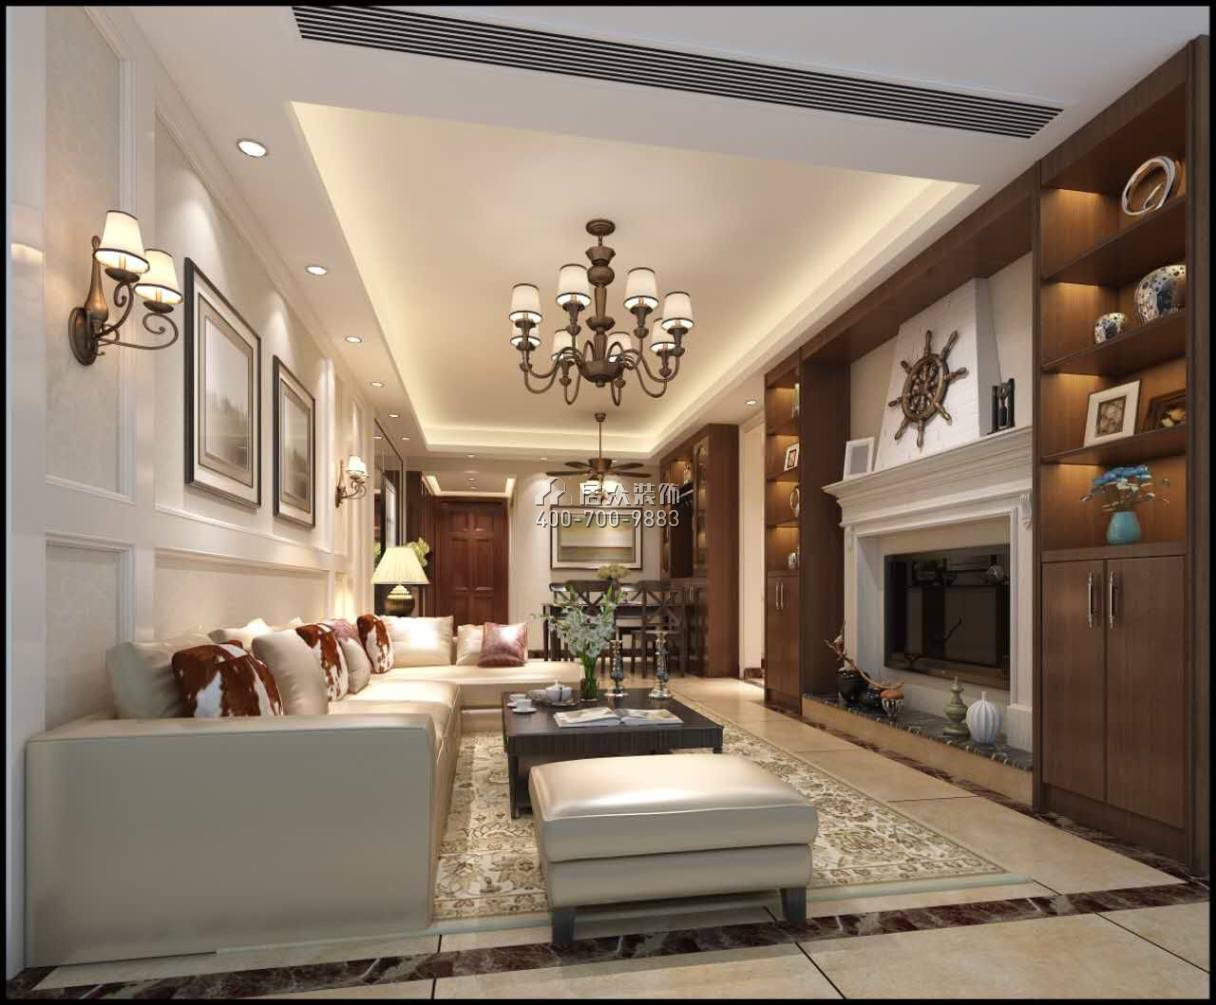 金地鷺湖1號89平方米美式風格平層戶型客廳裝修效果圖